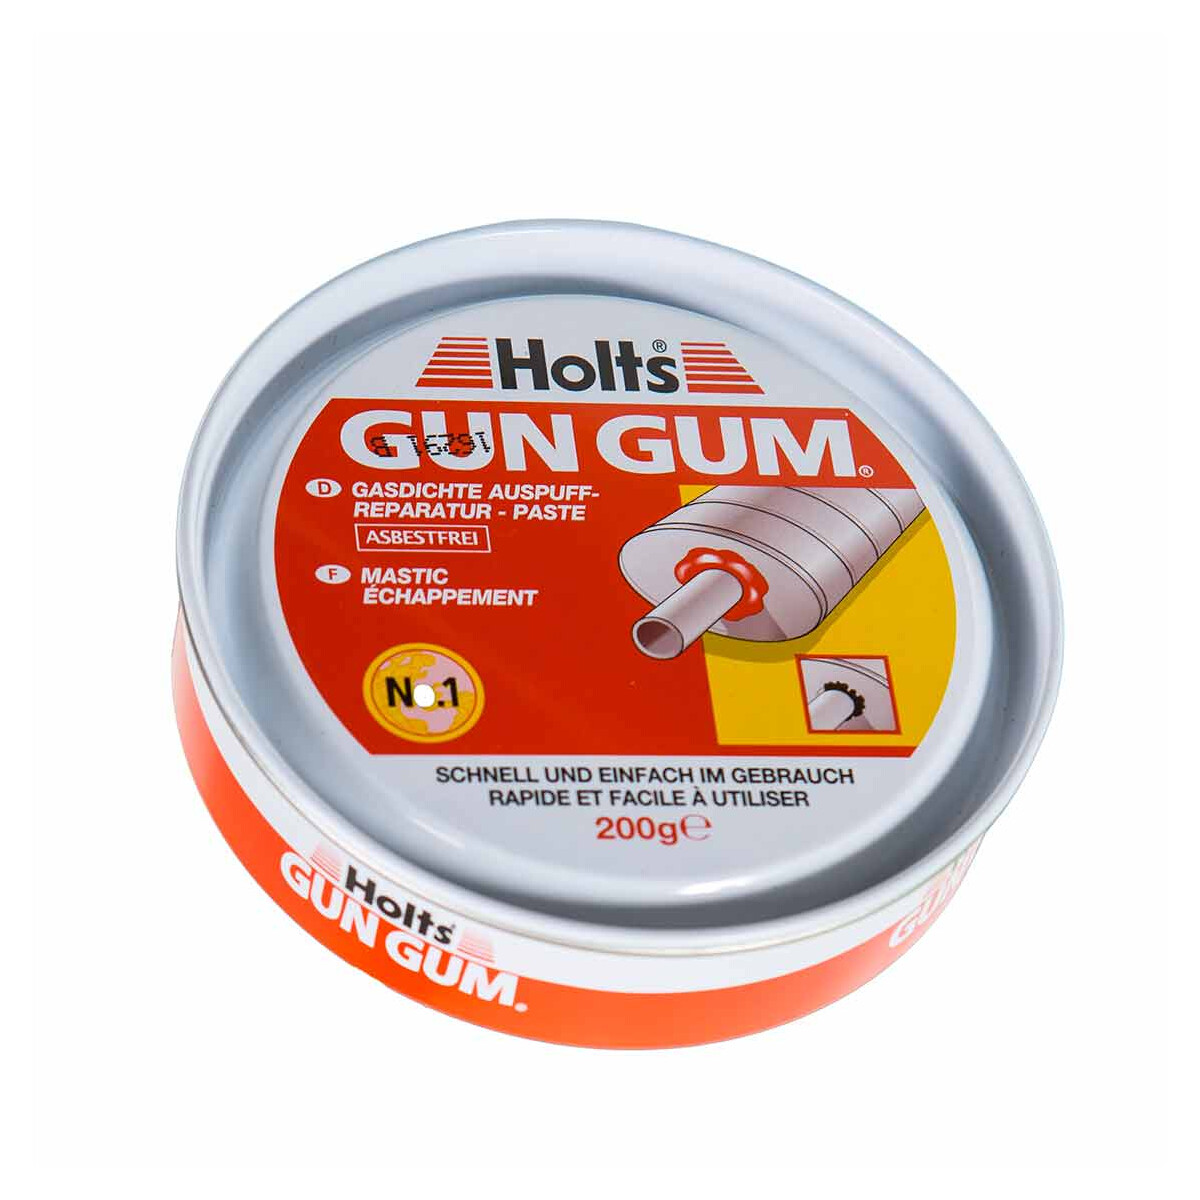 HOLTS Gun Gum 200g Auspuffdichtmasse gasdichte Auspuffreparatur Masse Kit  Paste 5010218331259